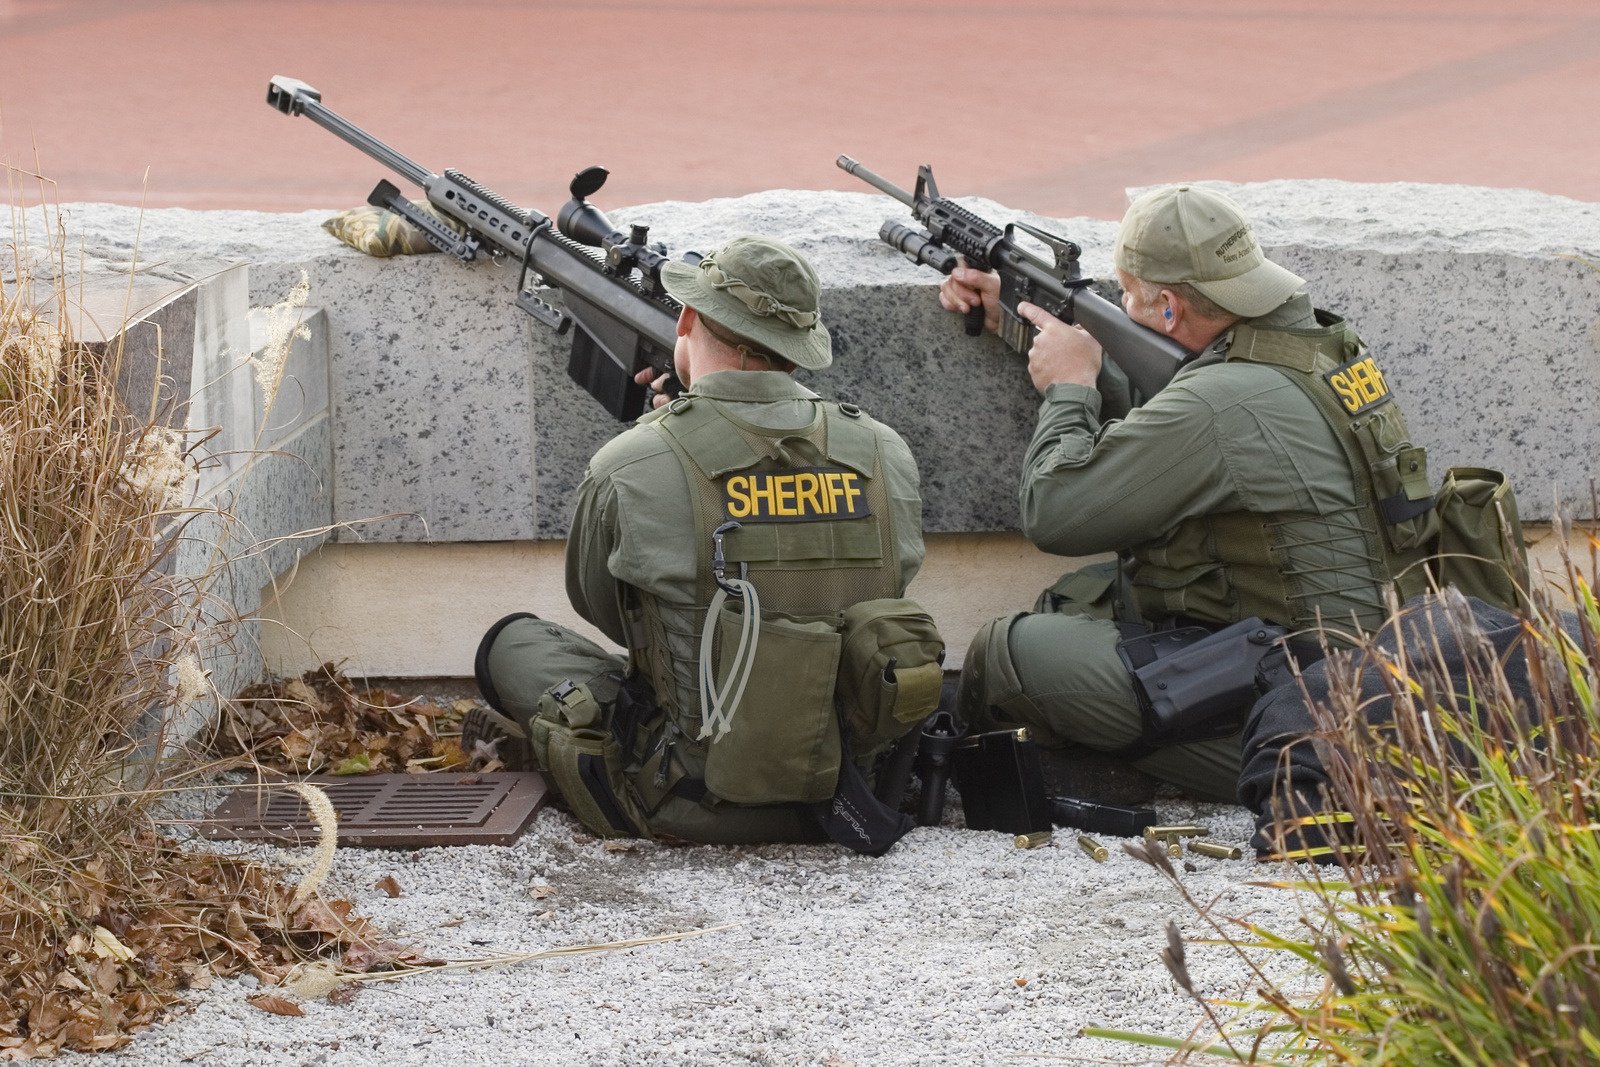 Снайперы с оружием за бетонным перекрытием